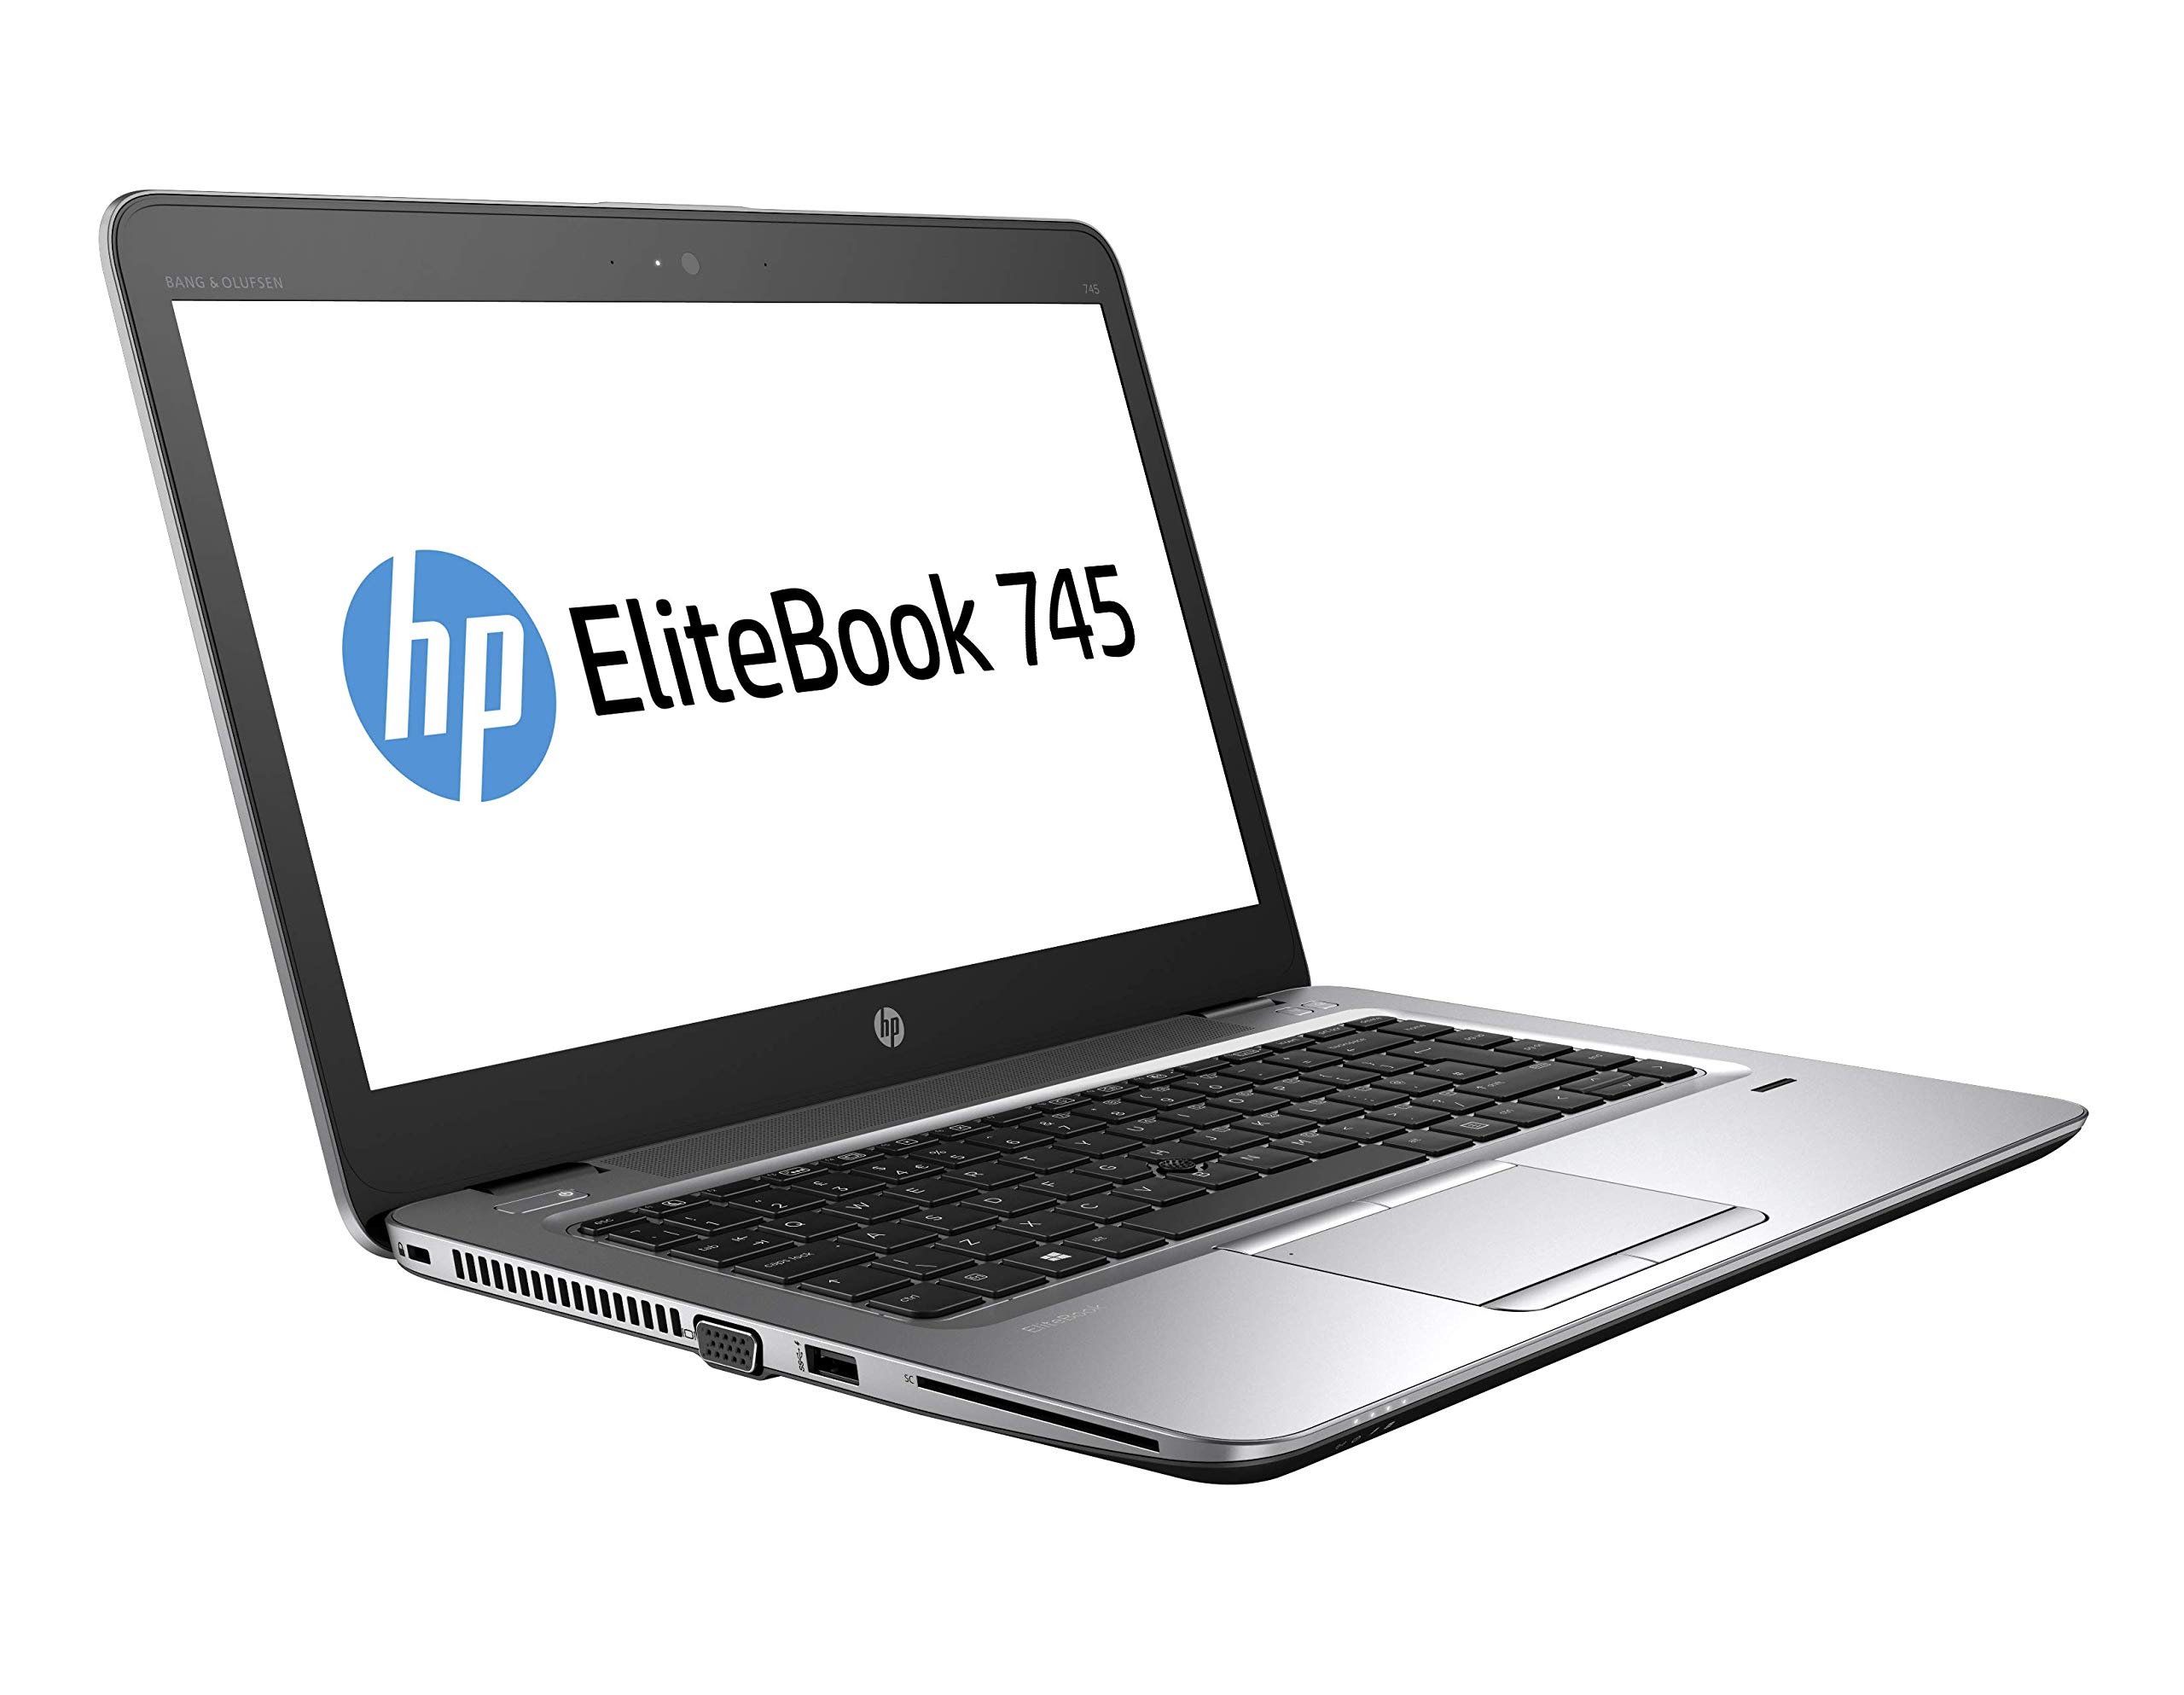 Portátil HP Ultrabook 745 G3 GRADO B (AMD PRO A10 8700B 1.8Ghz/8GB/120SSD-M.2/14FHD/NO-DVD/W10P) Preinstalado